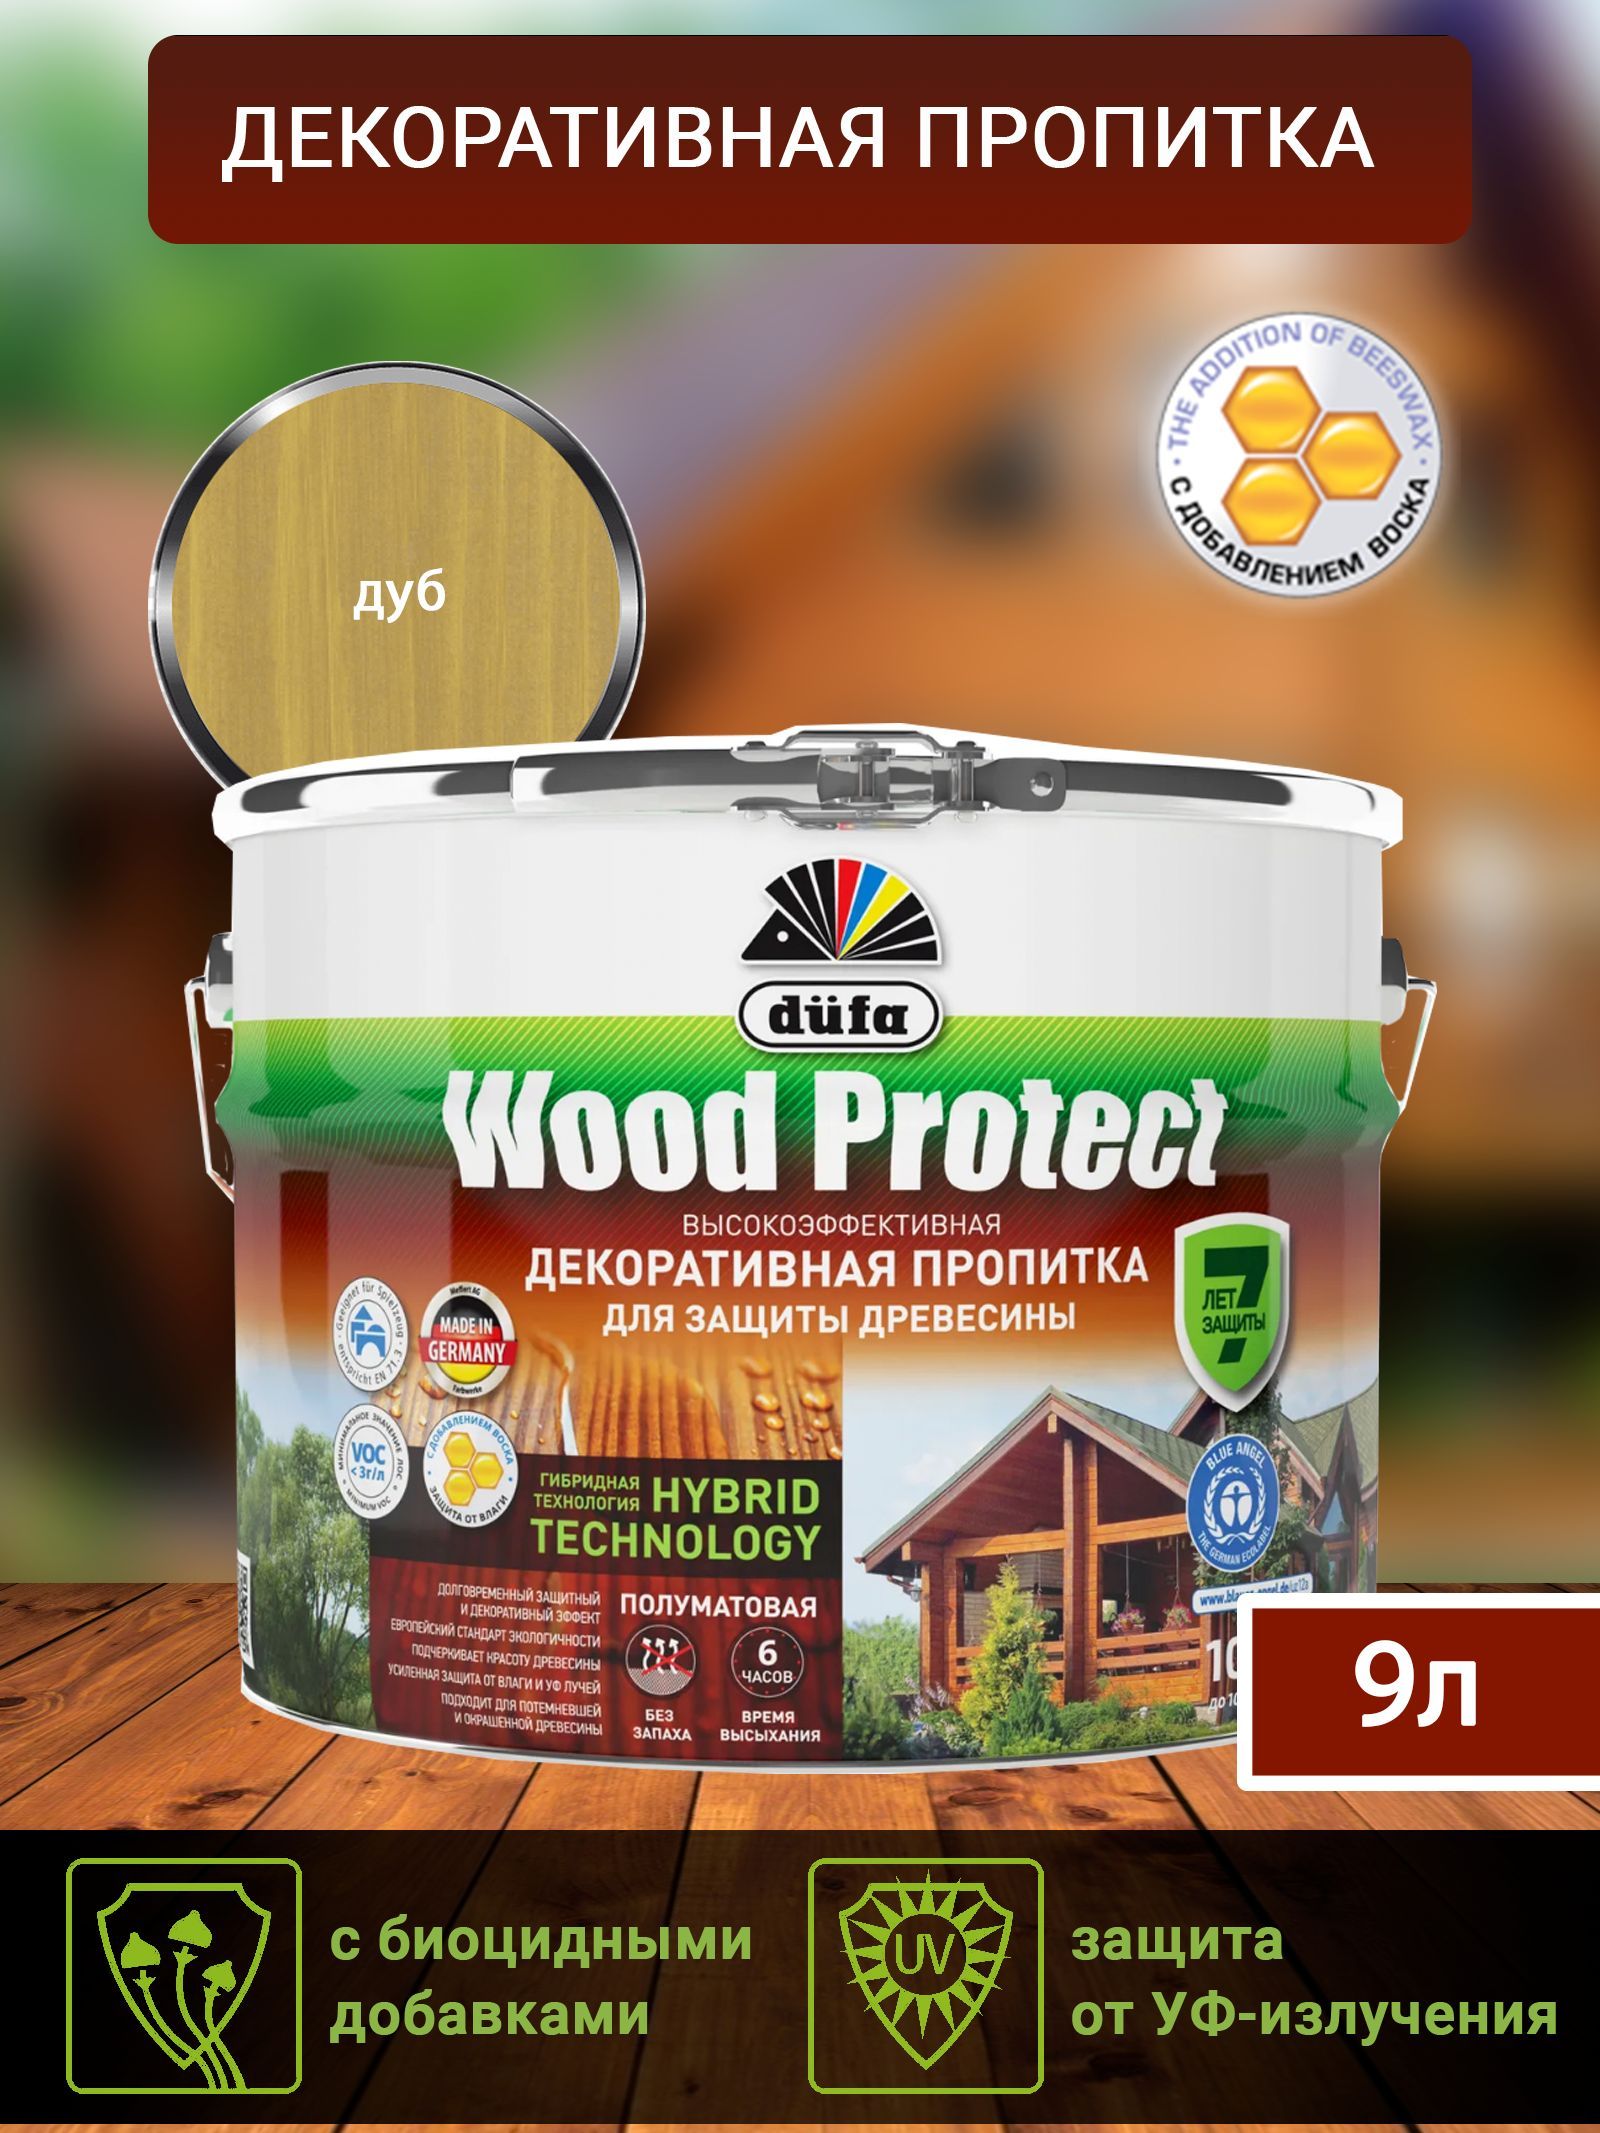 Dufa Пропитка “Wood Protect” для защиты древесины; дуб 9 л, шт